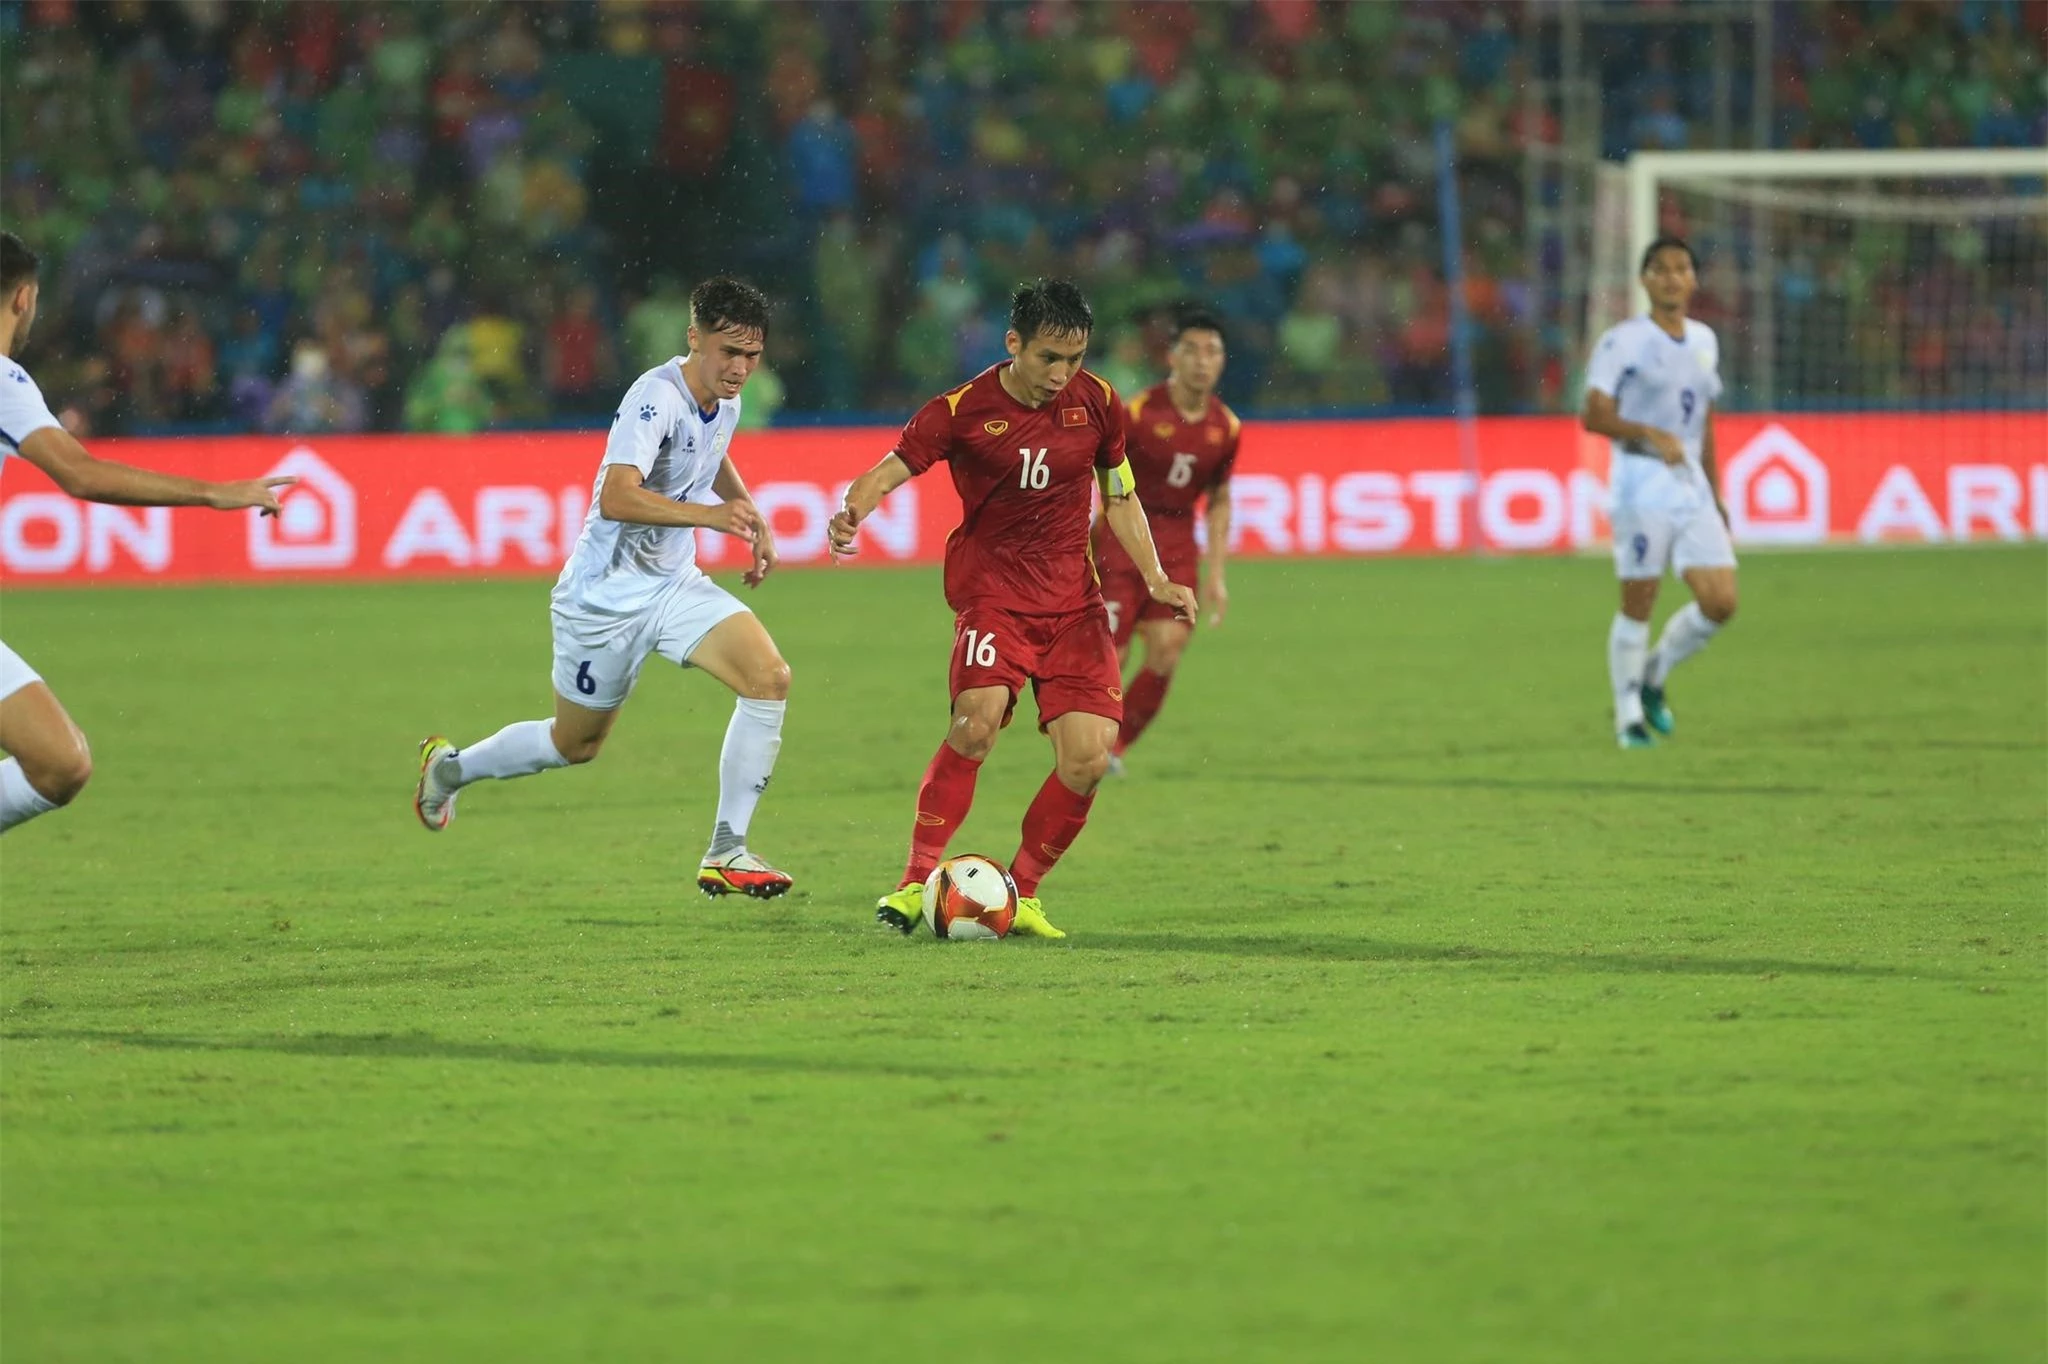 Hùng Dũng cùng các đồng đội sẽ dồn toàn lực để đánh bại U23 Myanmar - Ảnh: Đức Cường 